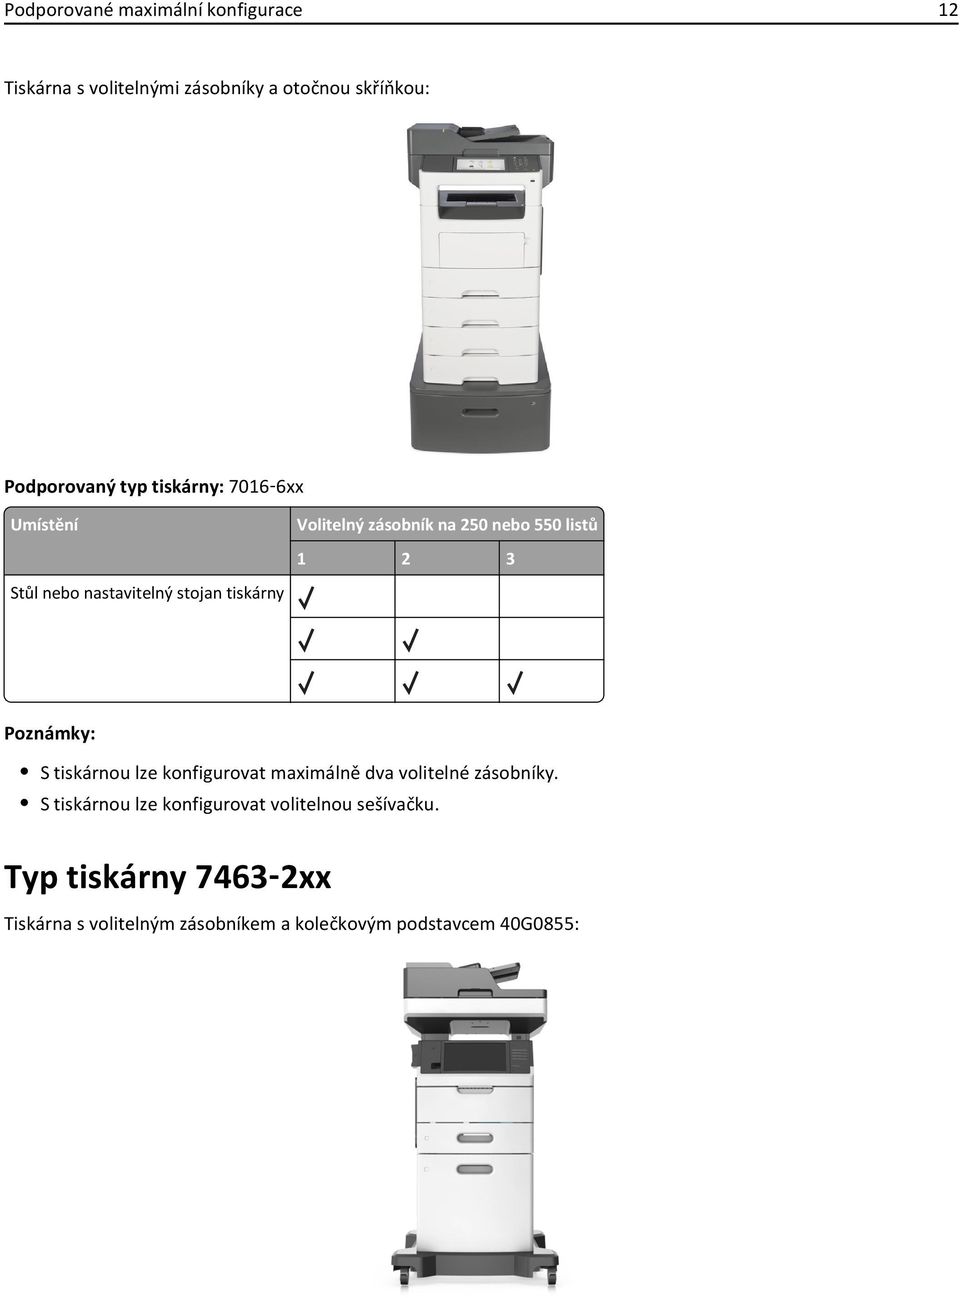 1 2 3 Poznámky: S tiskárnou lze konfigurovat maximálně dva volitelné zásobníky.